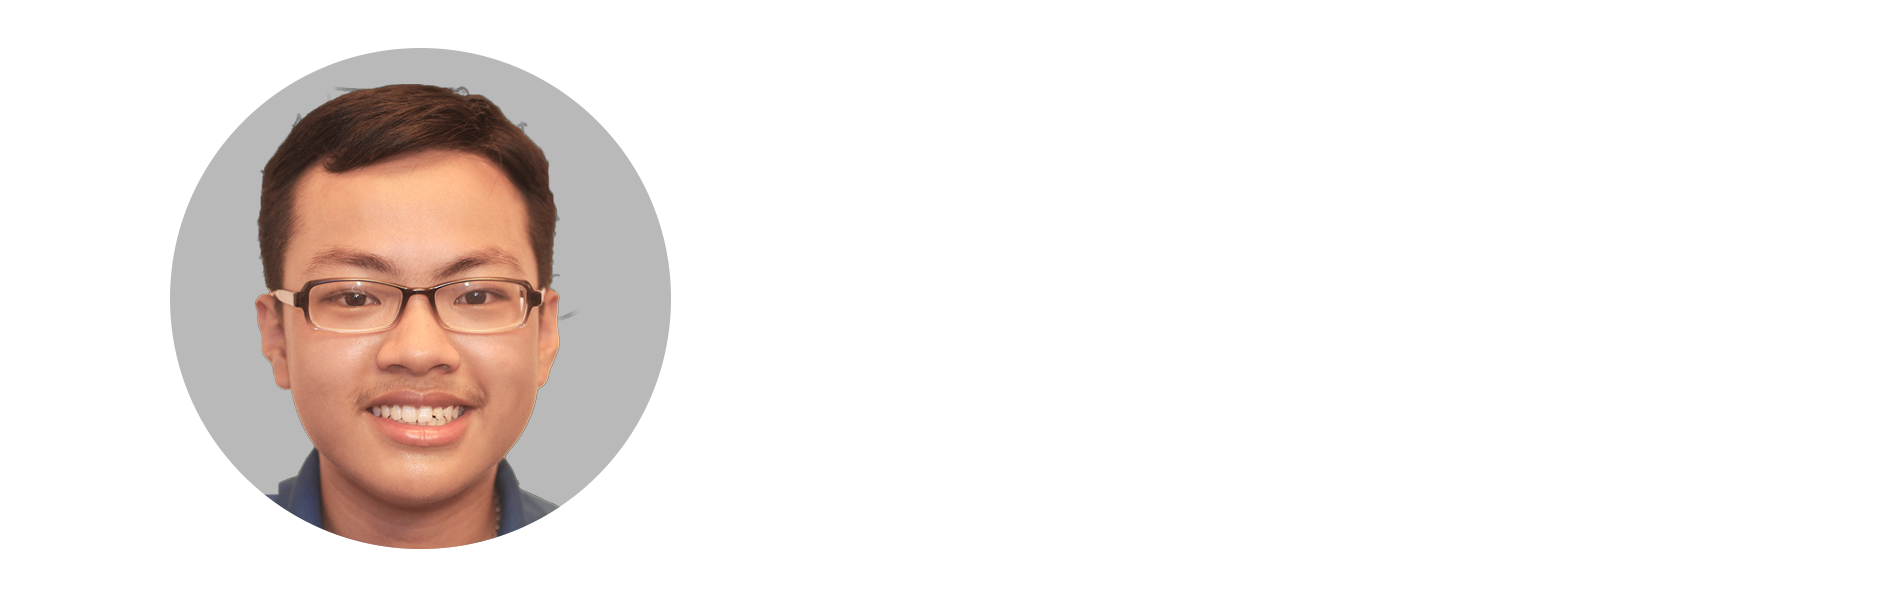 HAI-ANH